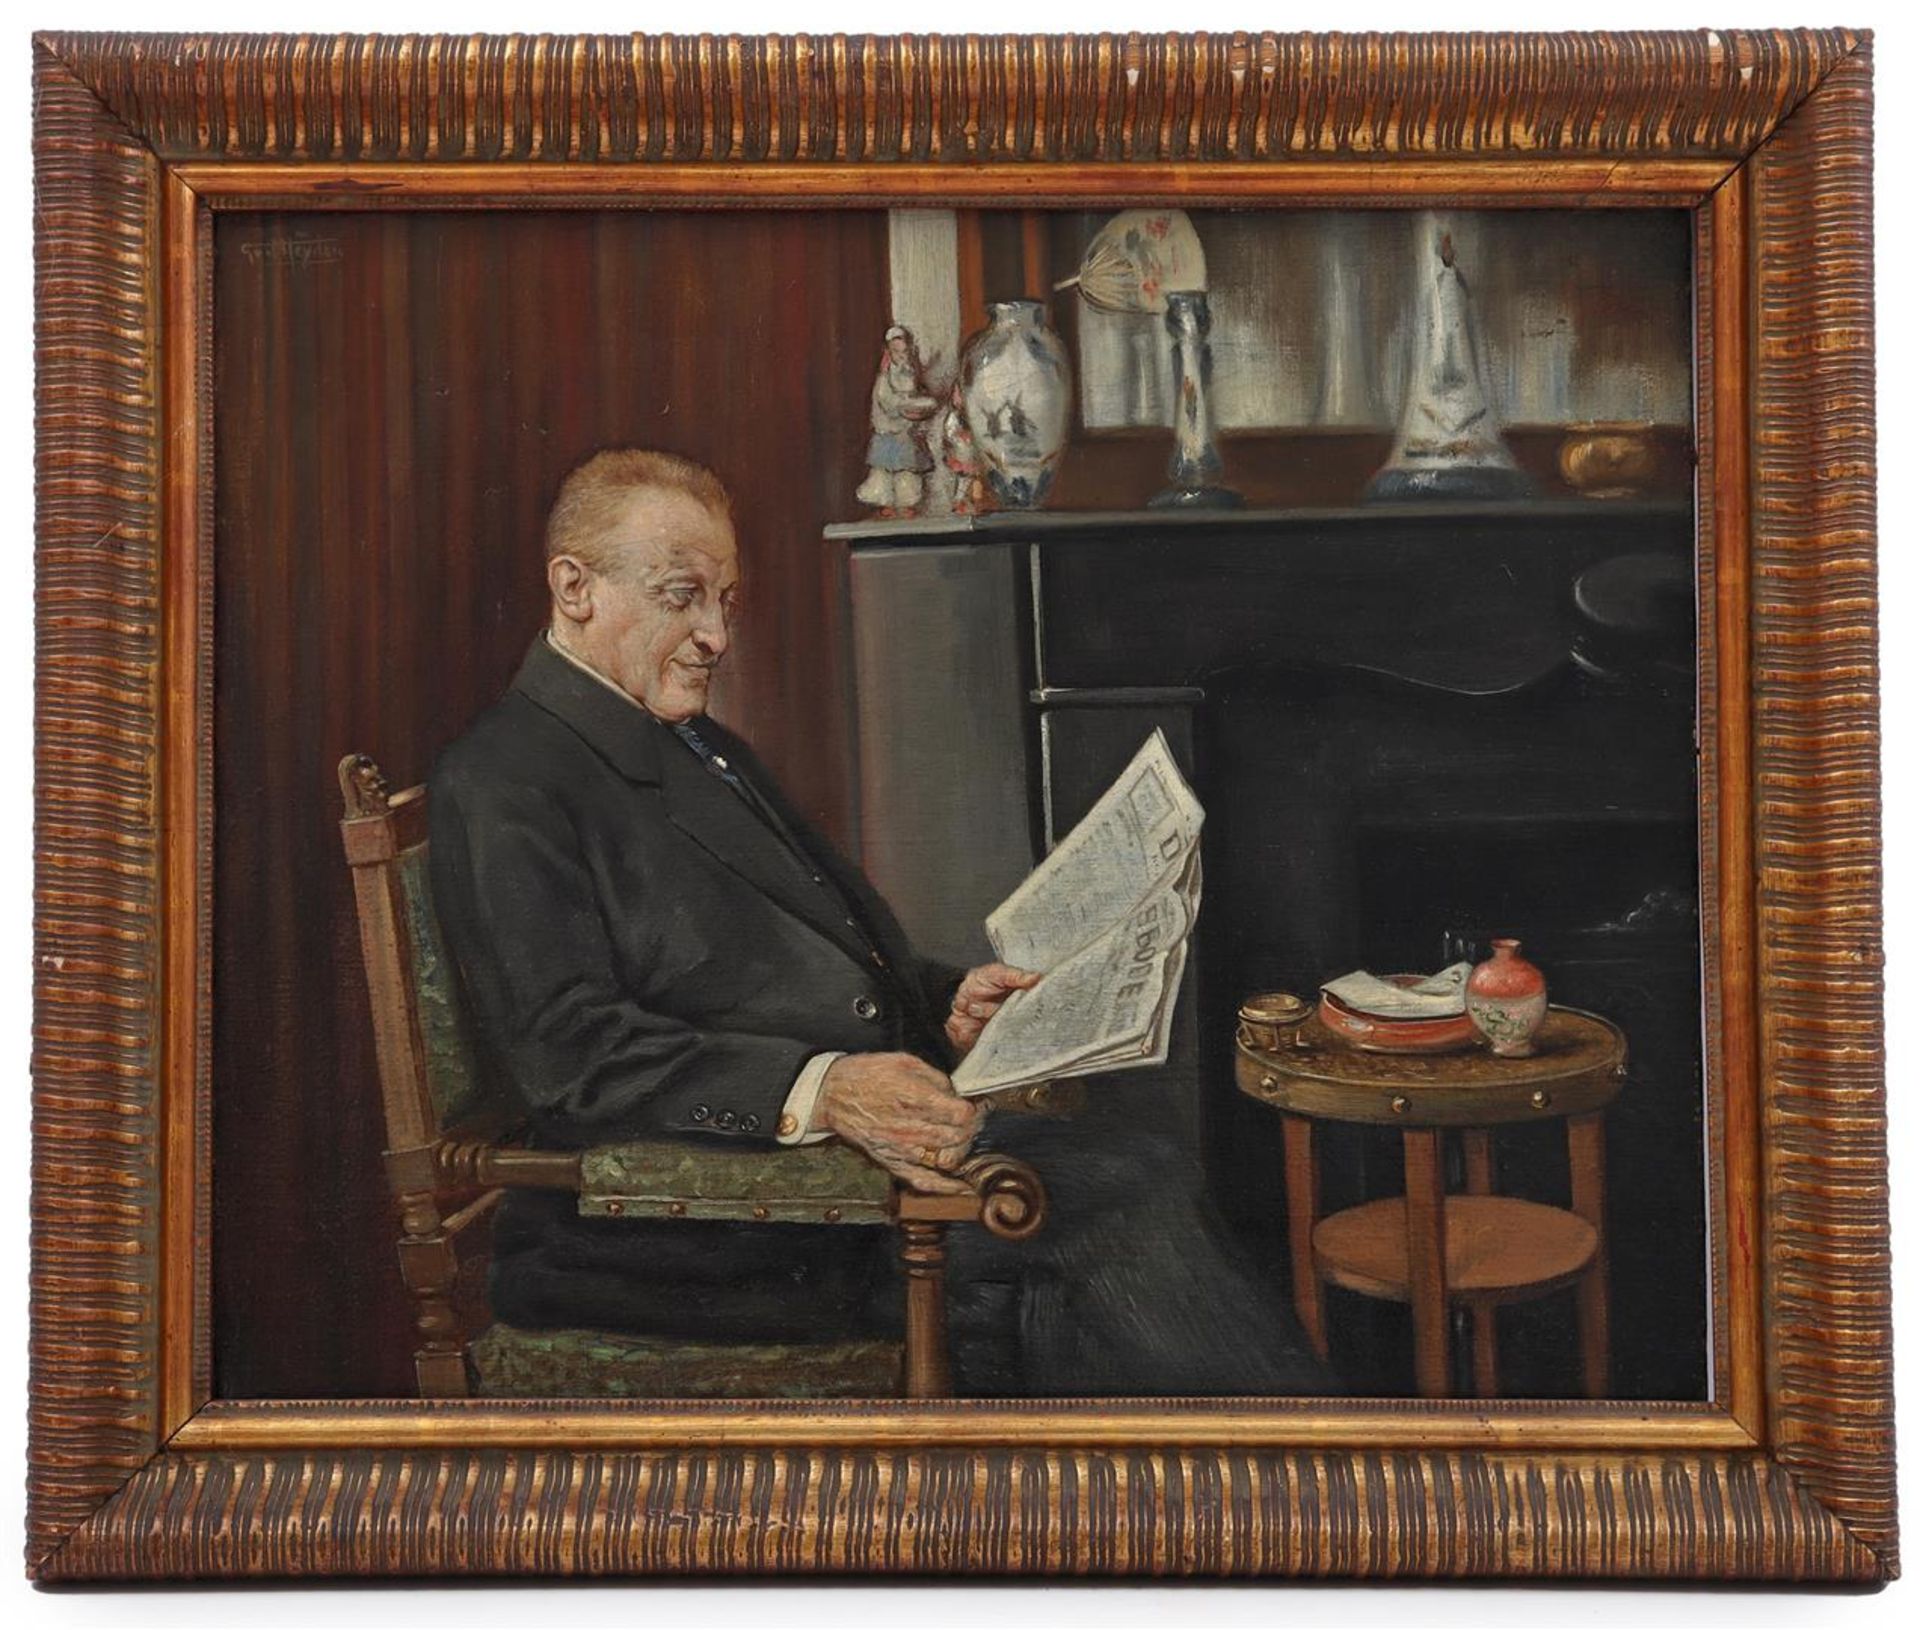 Gerard van der Heijden (1864-1939)
